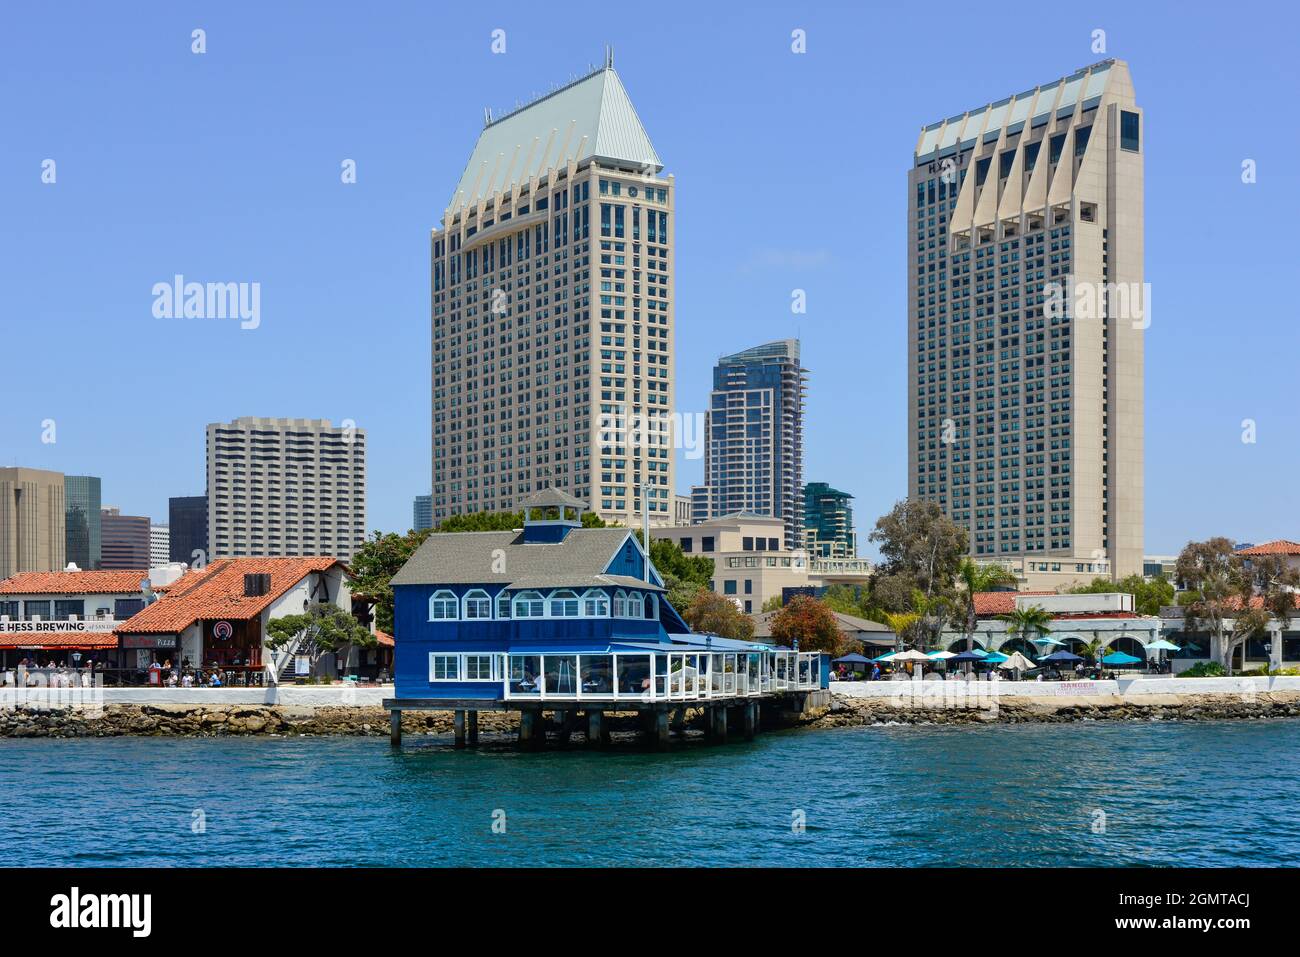 Das San Diego Pier Restaurant im blau-weißen Retro-Stil auf Stelzen im Seaport Village mit sich abzeichnenden Hochhäusern an der Bucht von San Diego, CA Stockfoto